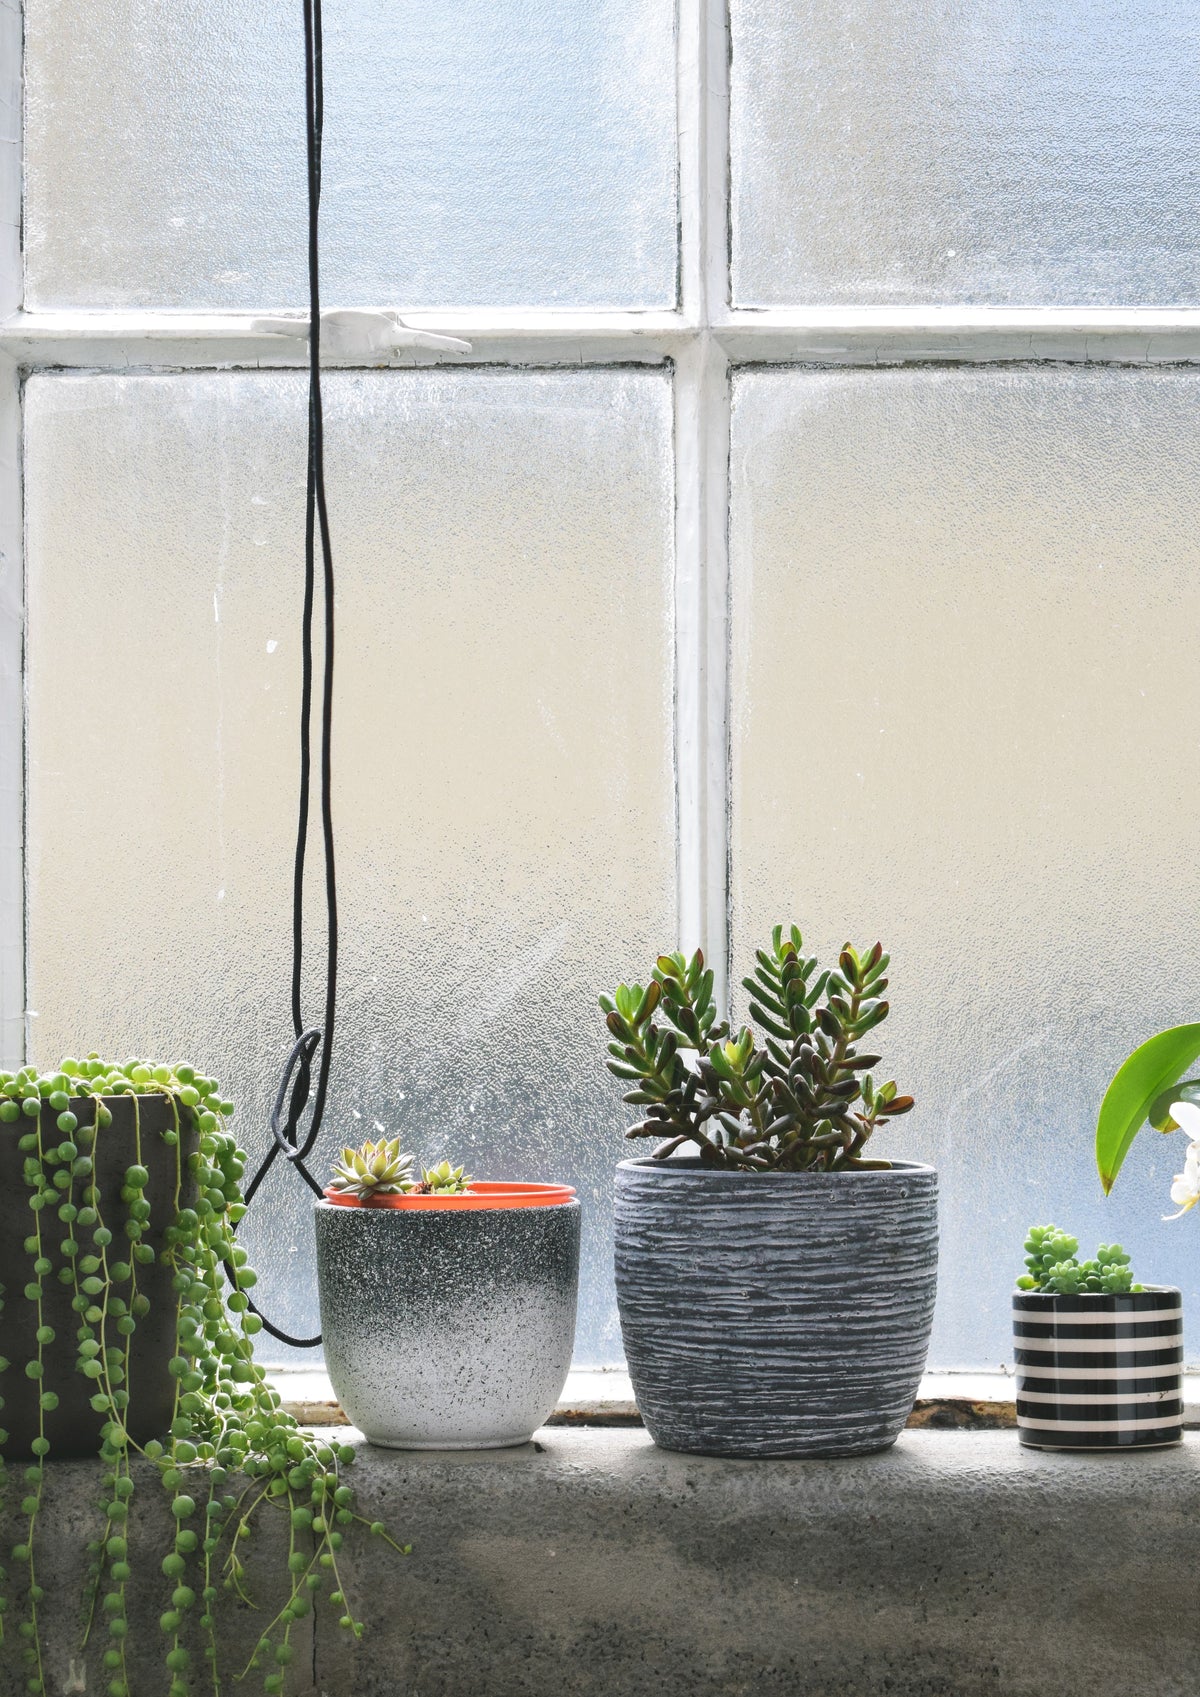 Erbsenpflanze und Sukkulenten auf einem Fensterbrett an einem beschlagenen Fenster